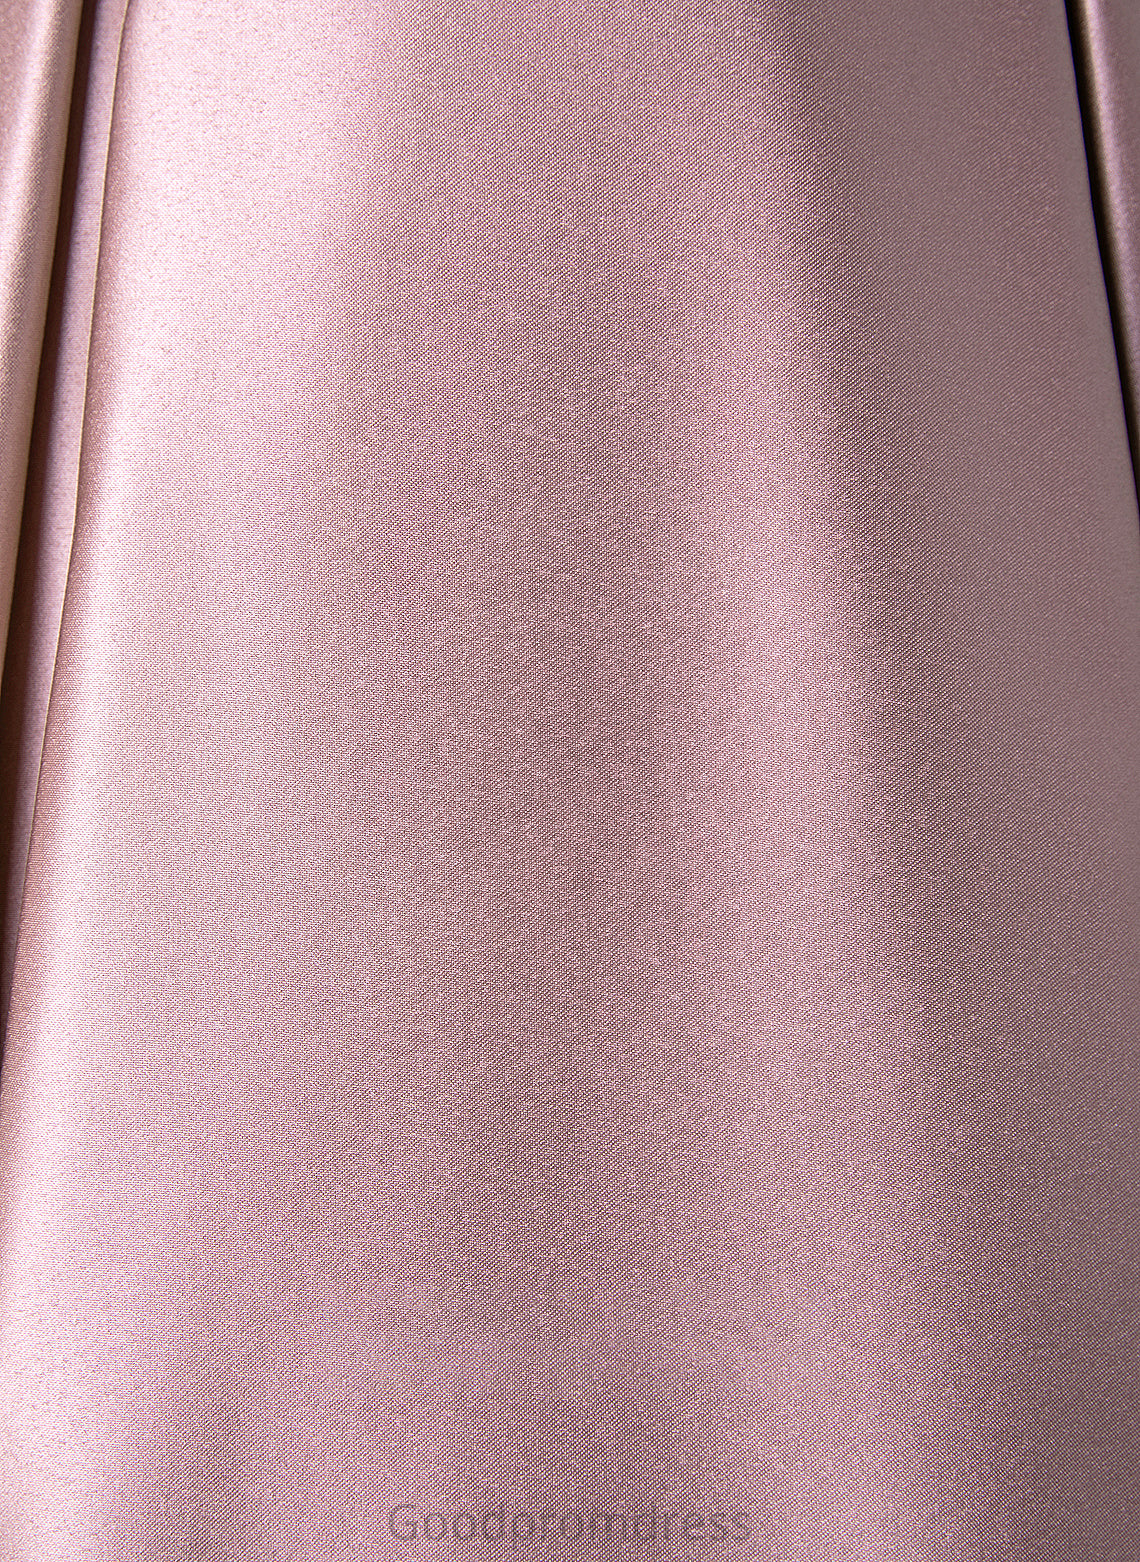 Floor-Length Embellishment Neckline Length Silhouette Off-the-Shoulder Fabric A-Line Pockets Dulce A-Line/Princess Sleeveless Bridesmaid Dresses